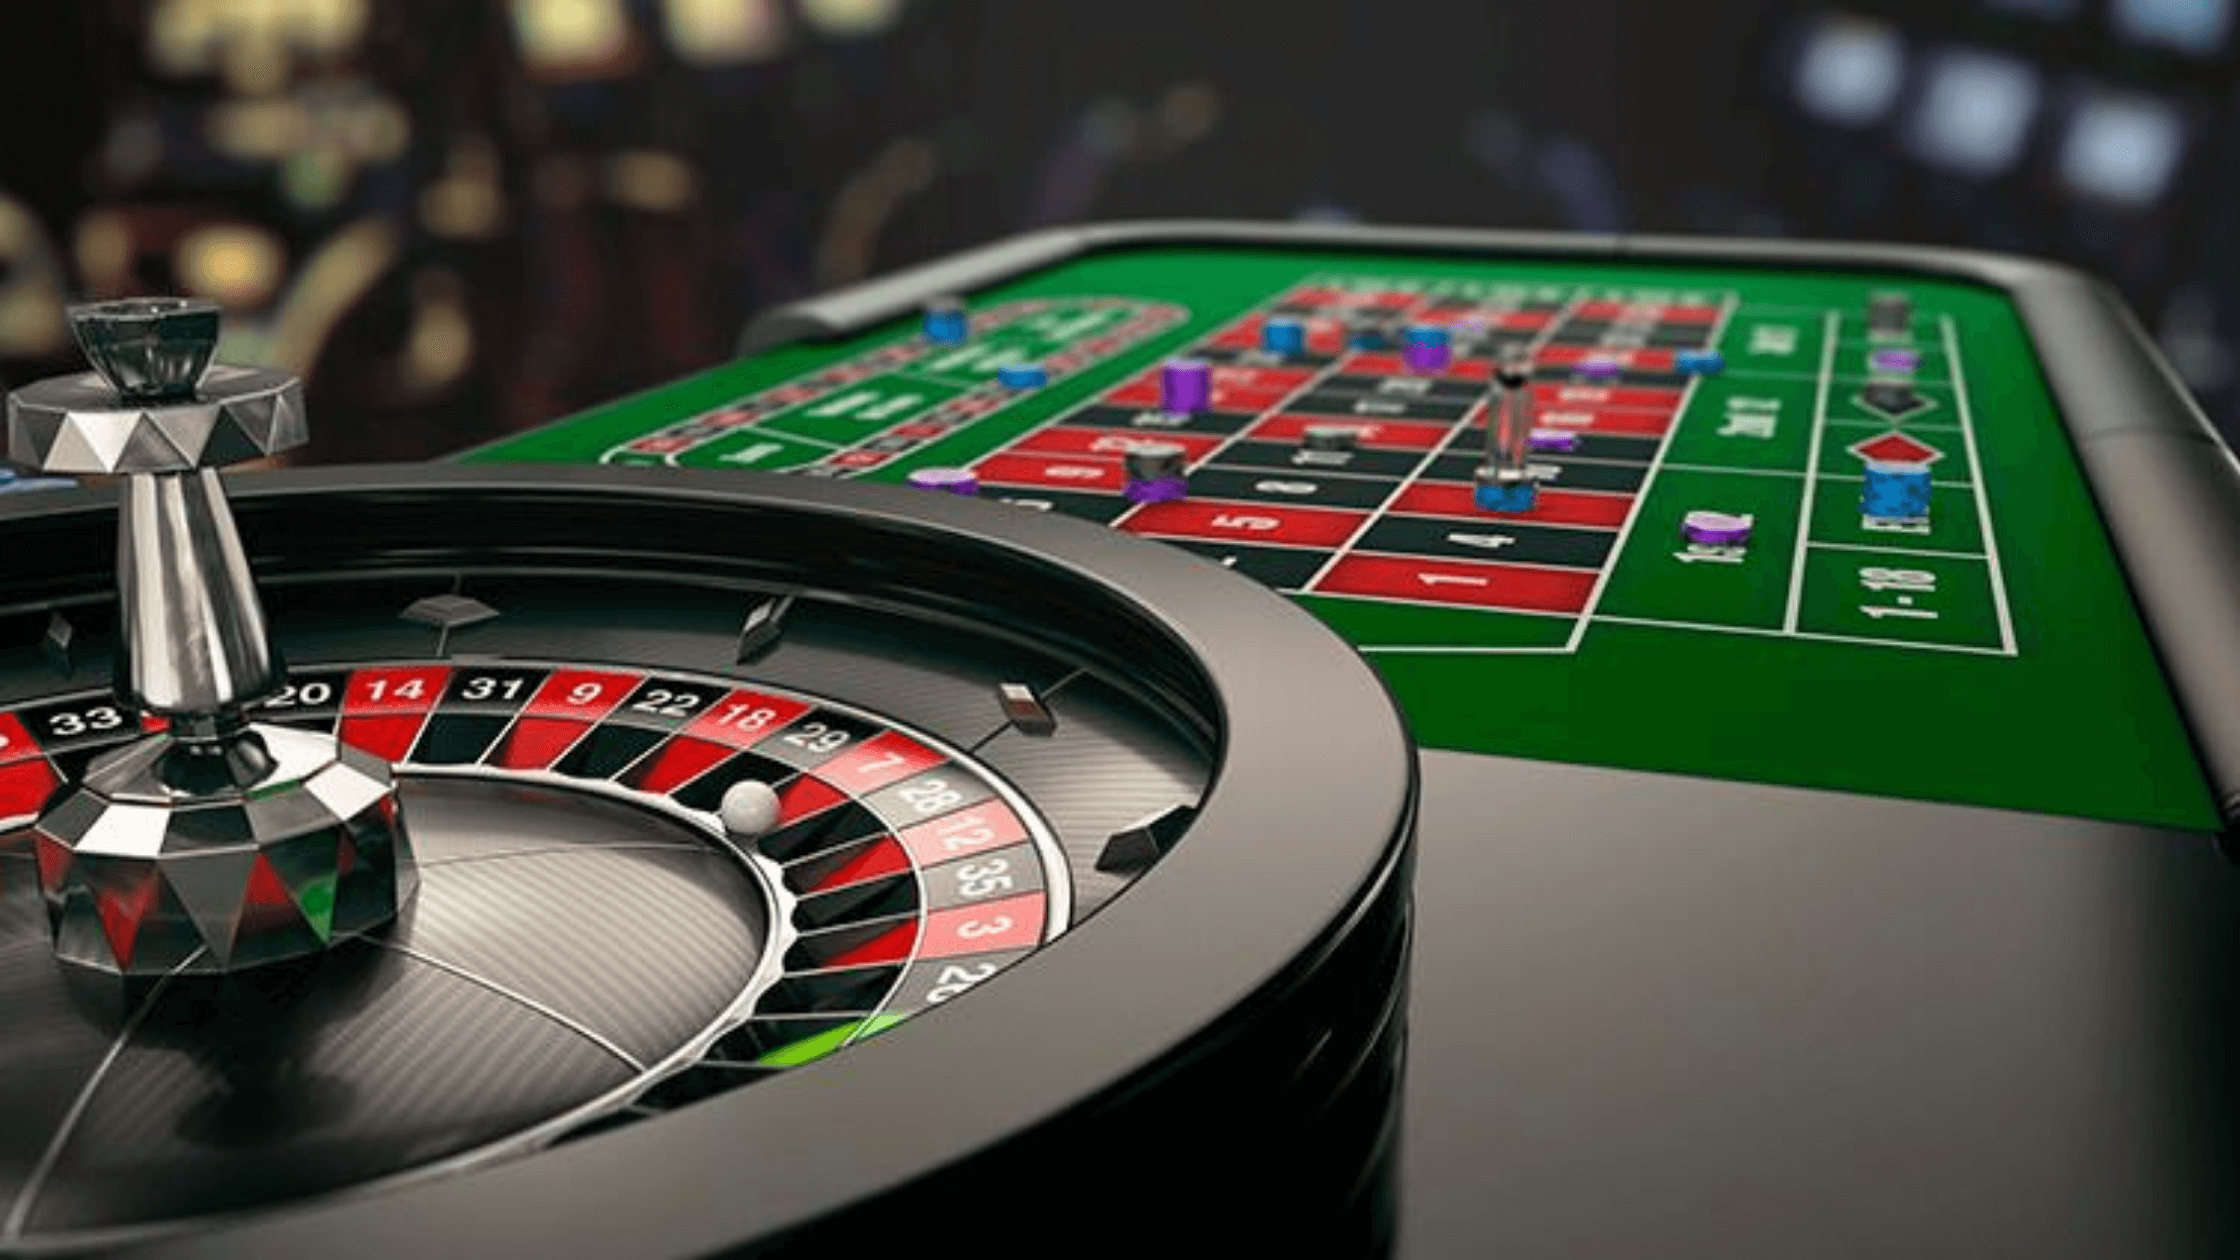 Mobile Casino Game